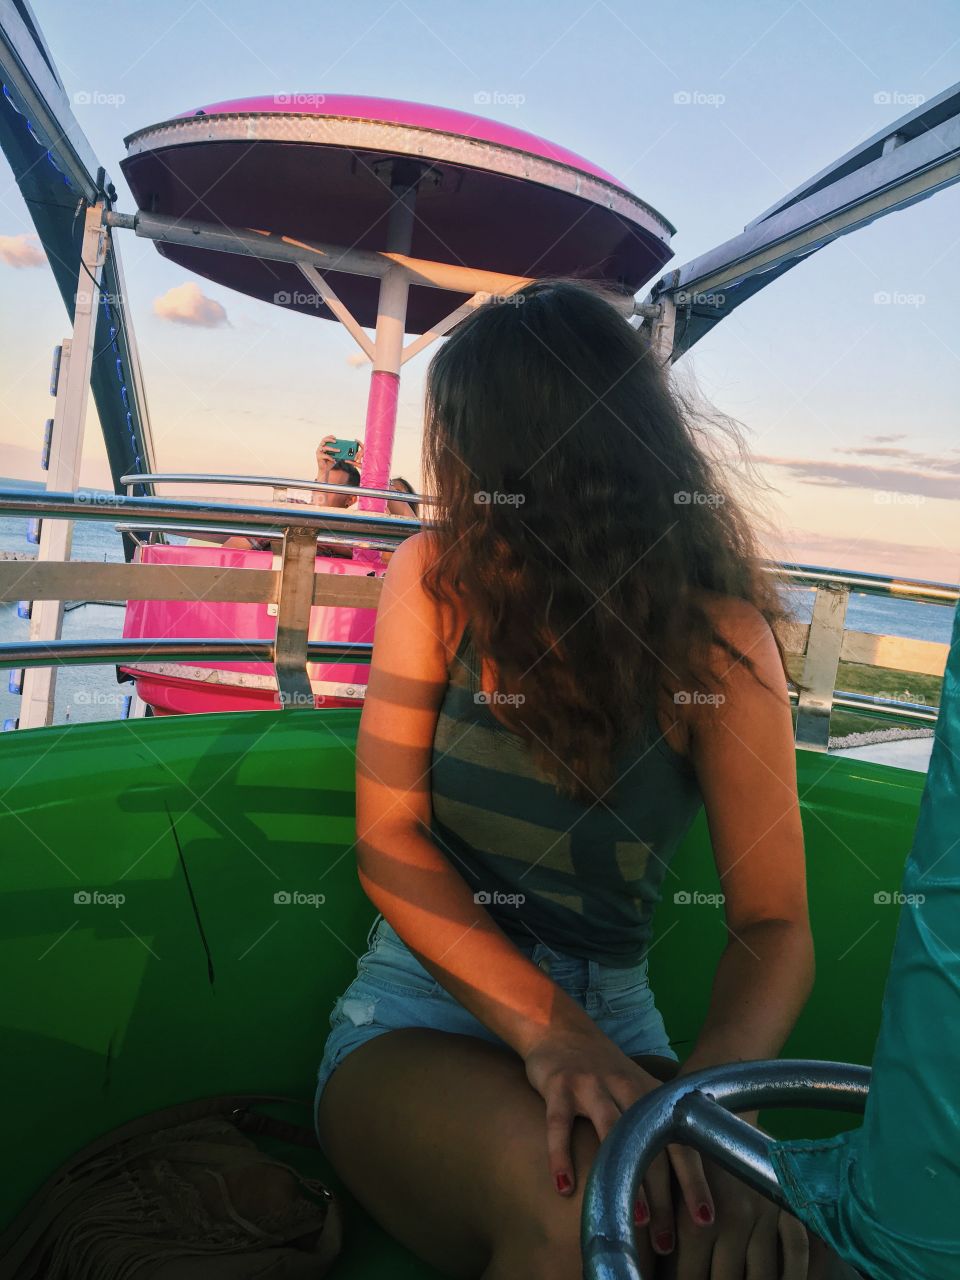 Sunset on the Ferris wheel 